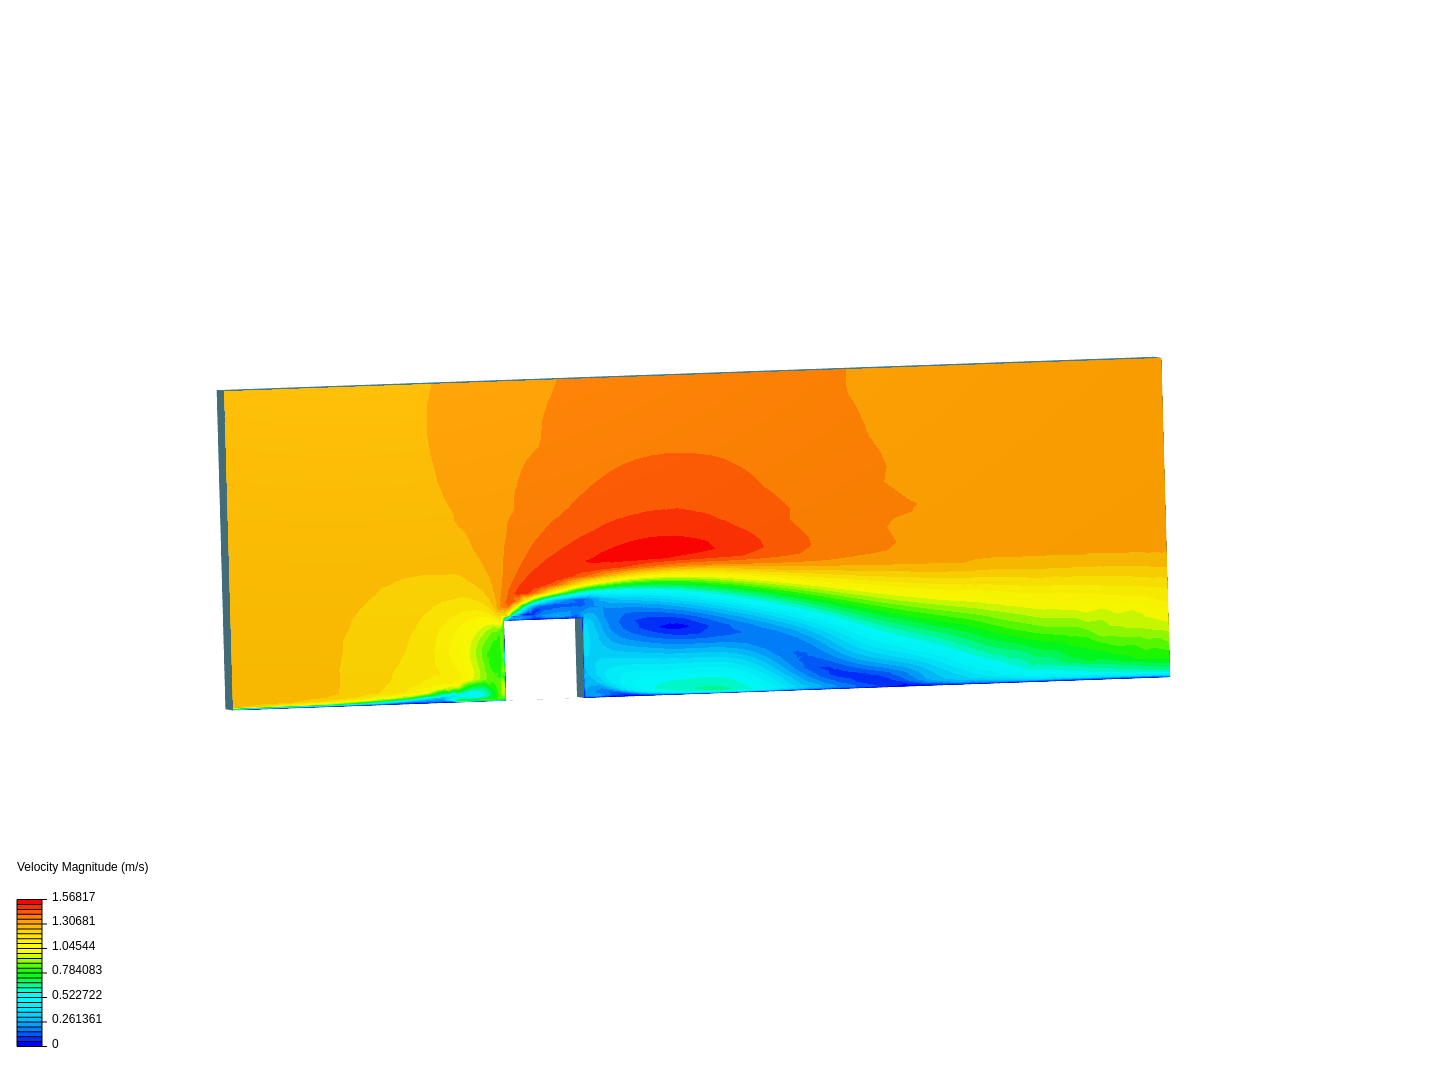 Simulación de un cubo_test image